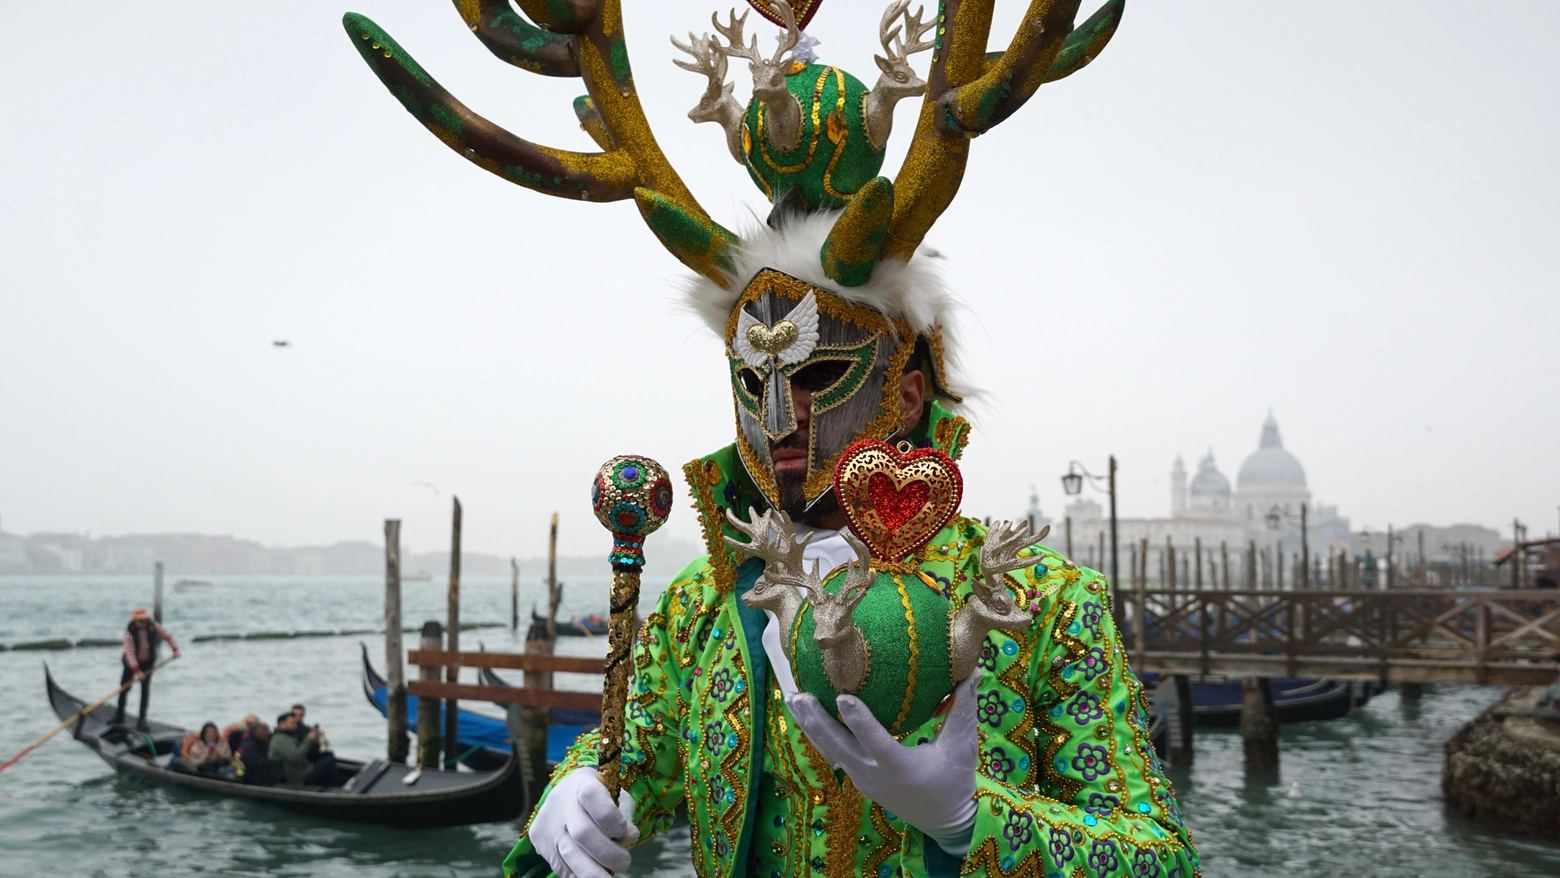 Alcuni simboli di Venezia: le gondole sulla laguna, il carnevale e sullo sfondo la basilica di San Marco